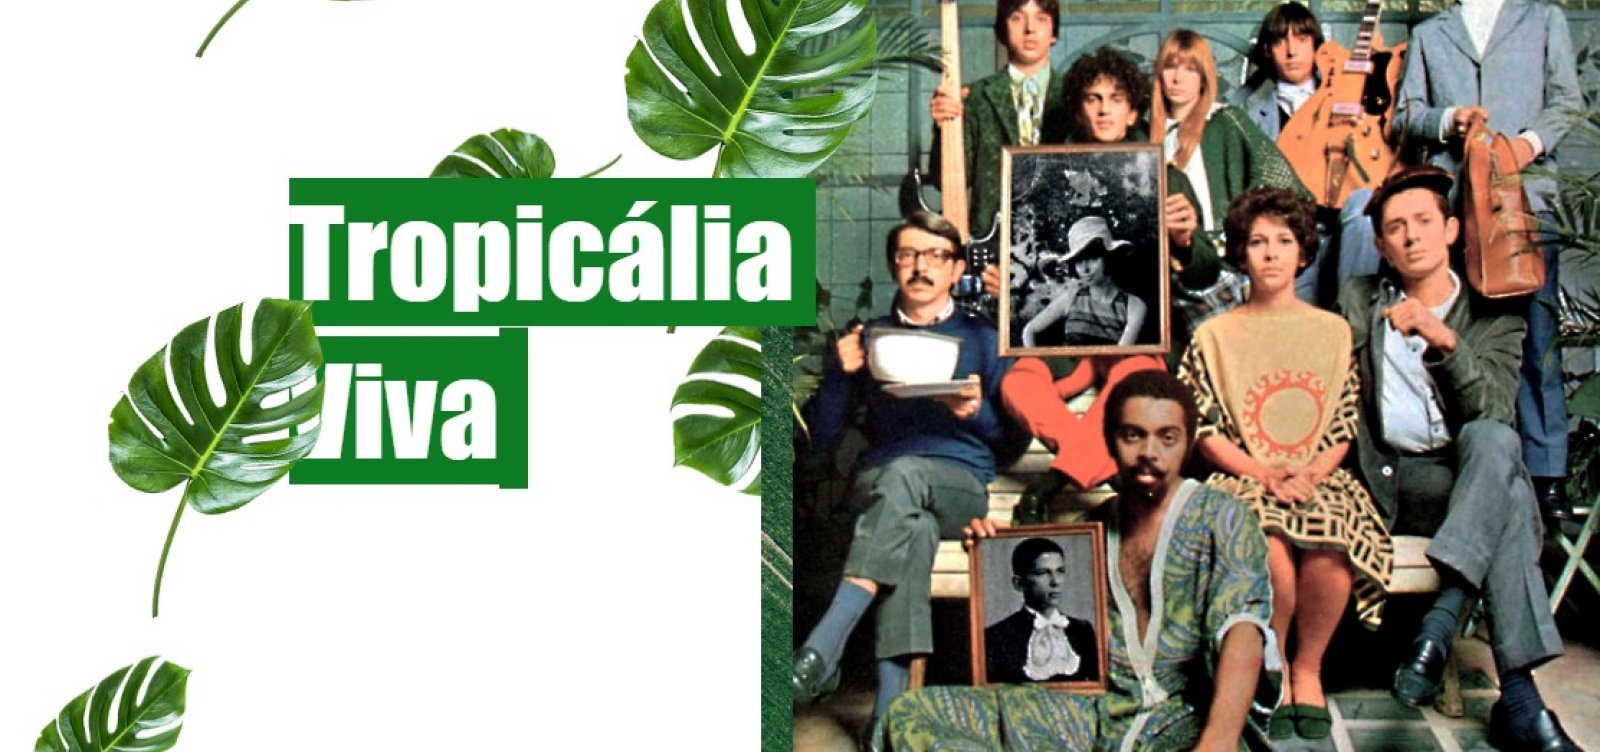 Após sucesso no Instagram, pesquisador lança site sobre Tropicalismo com área de estudo gratuita